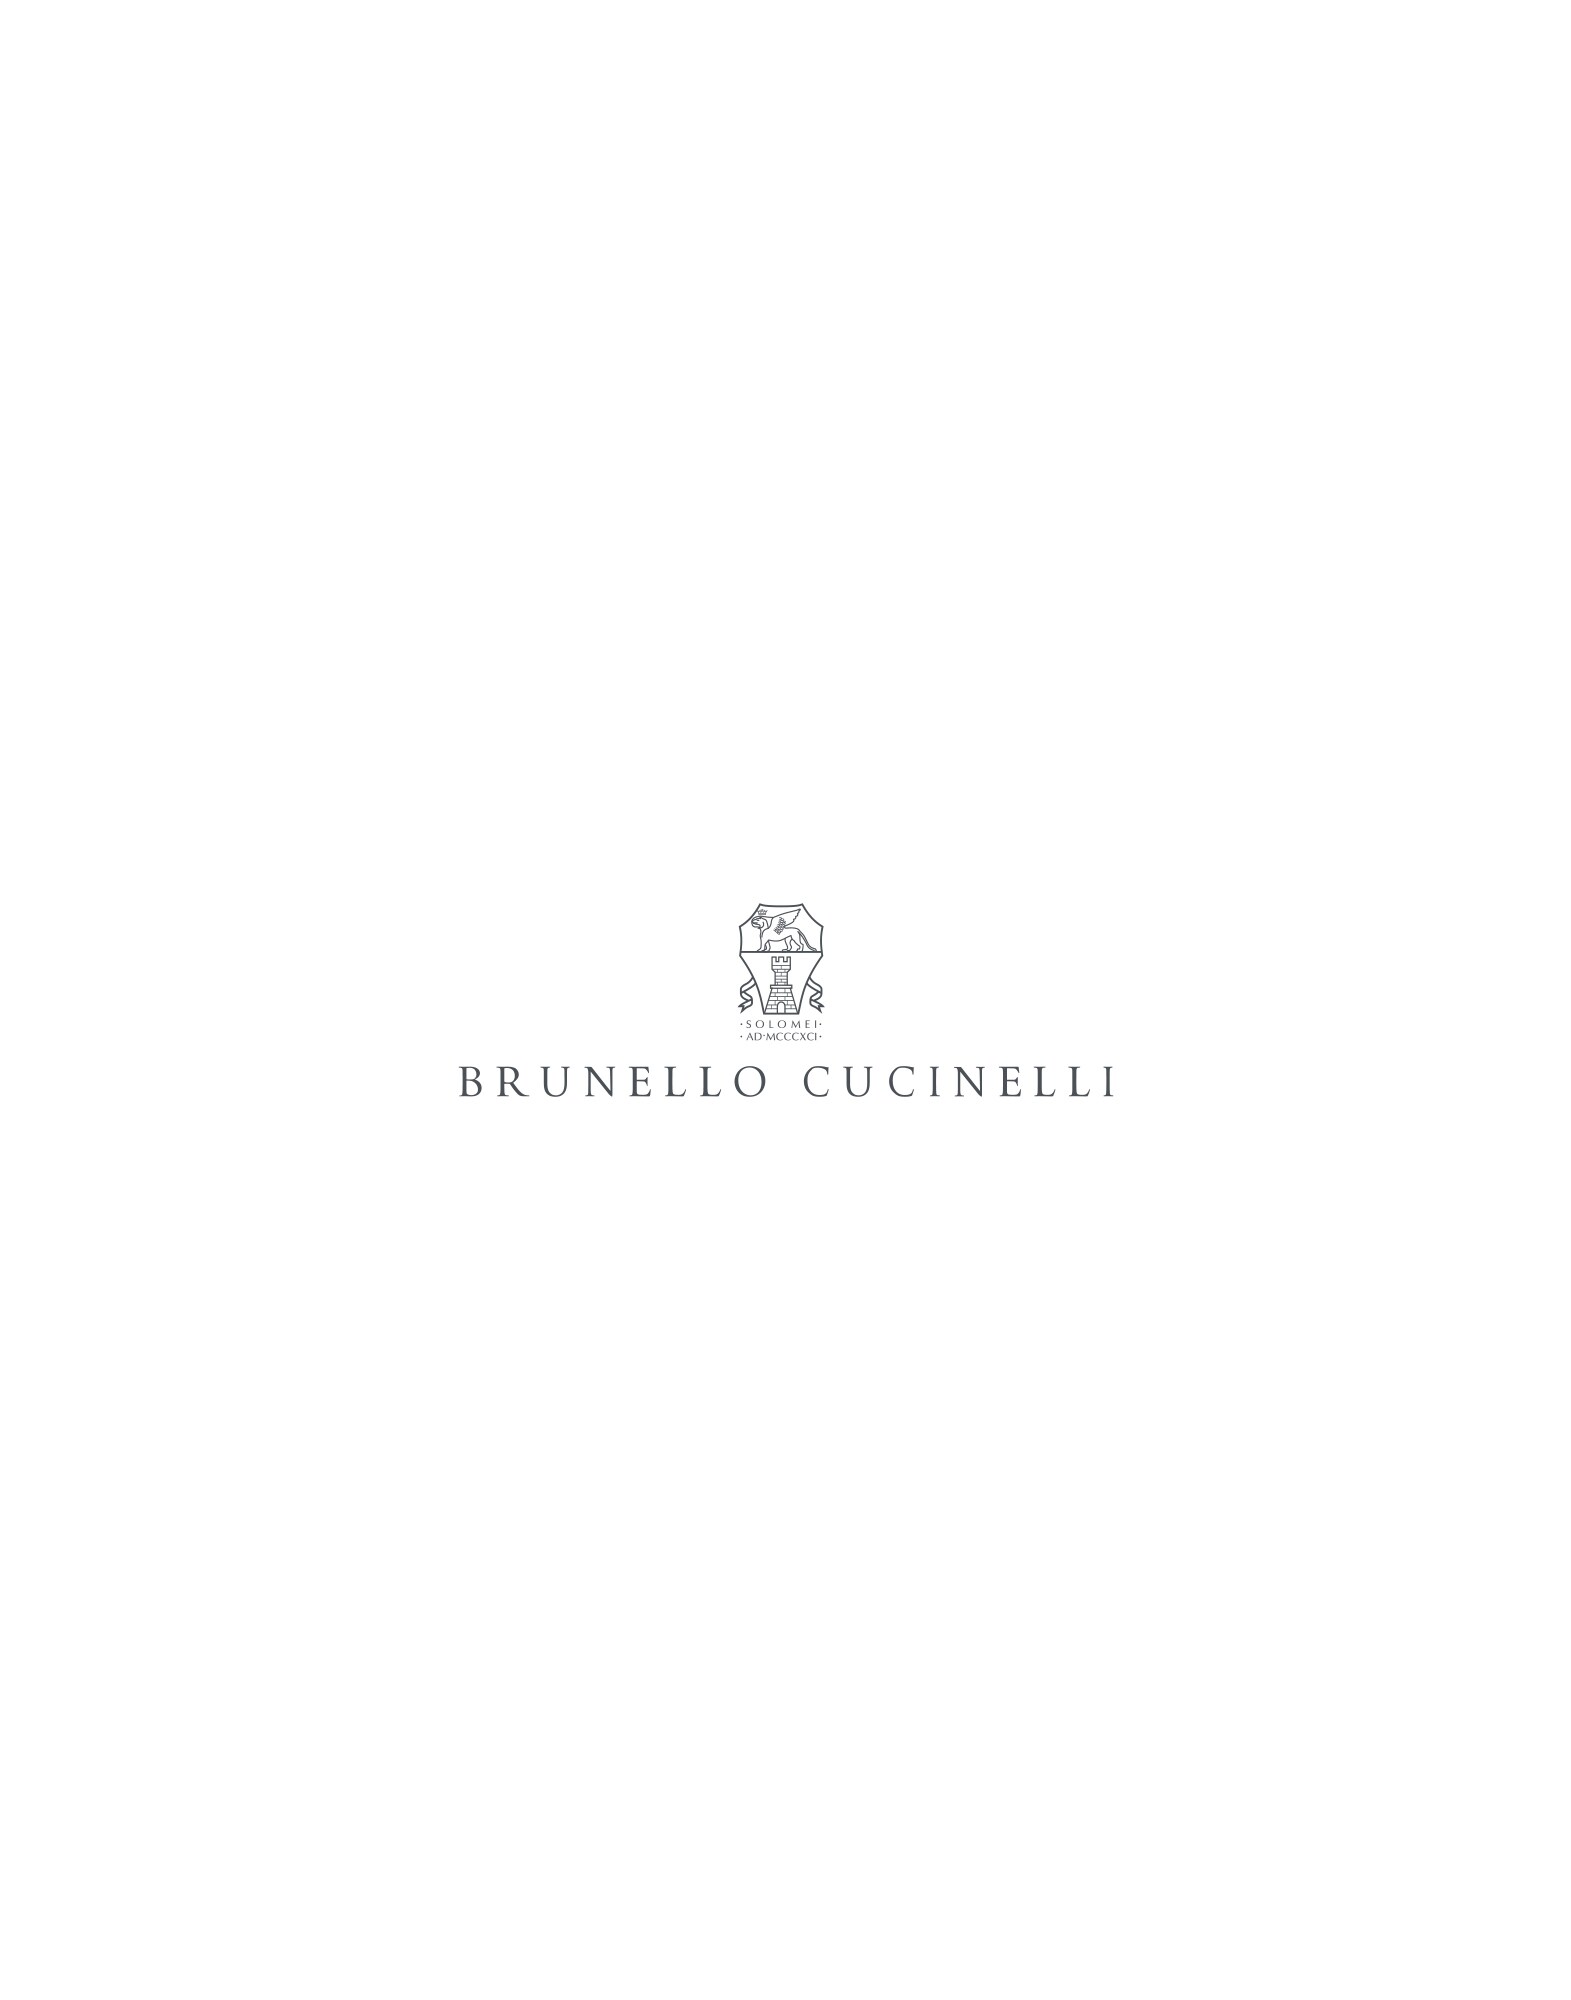 Watch roll White Man - Brunello Cucinelli